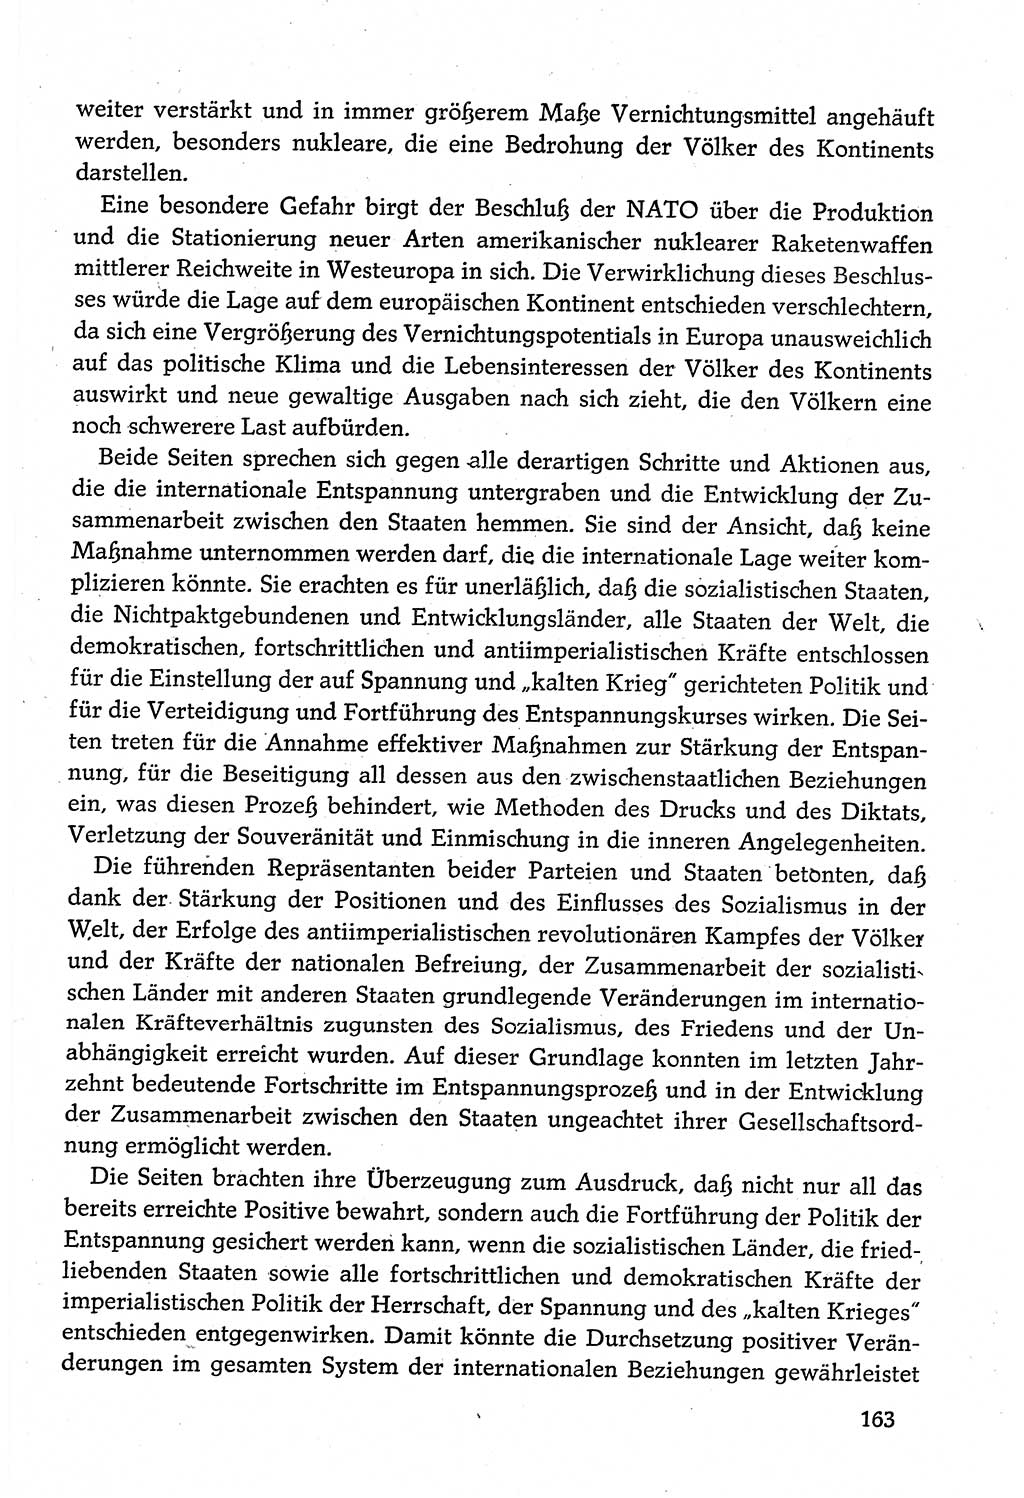 Dokumente der Sozialistischen Einheitspartei Deutschlands (SED) [Deutsche Demokratische Republik (DDR)] 1980-1981, Seite 163 (Dok. SED DDR 1980-1981, S. 163)